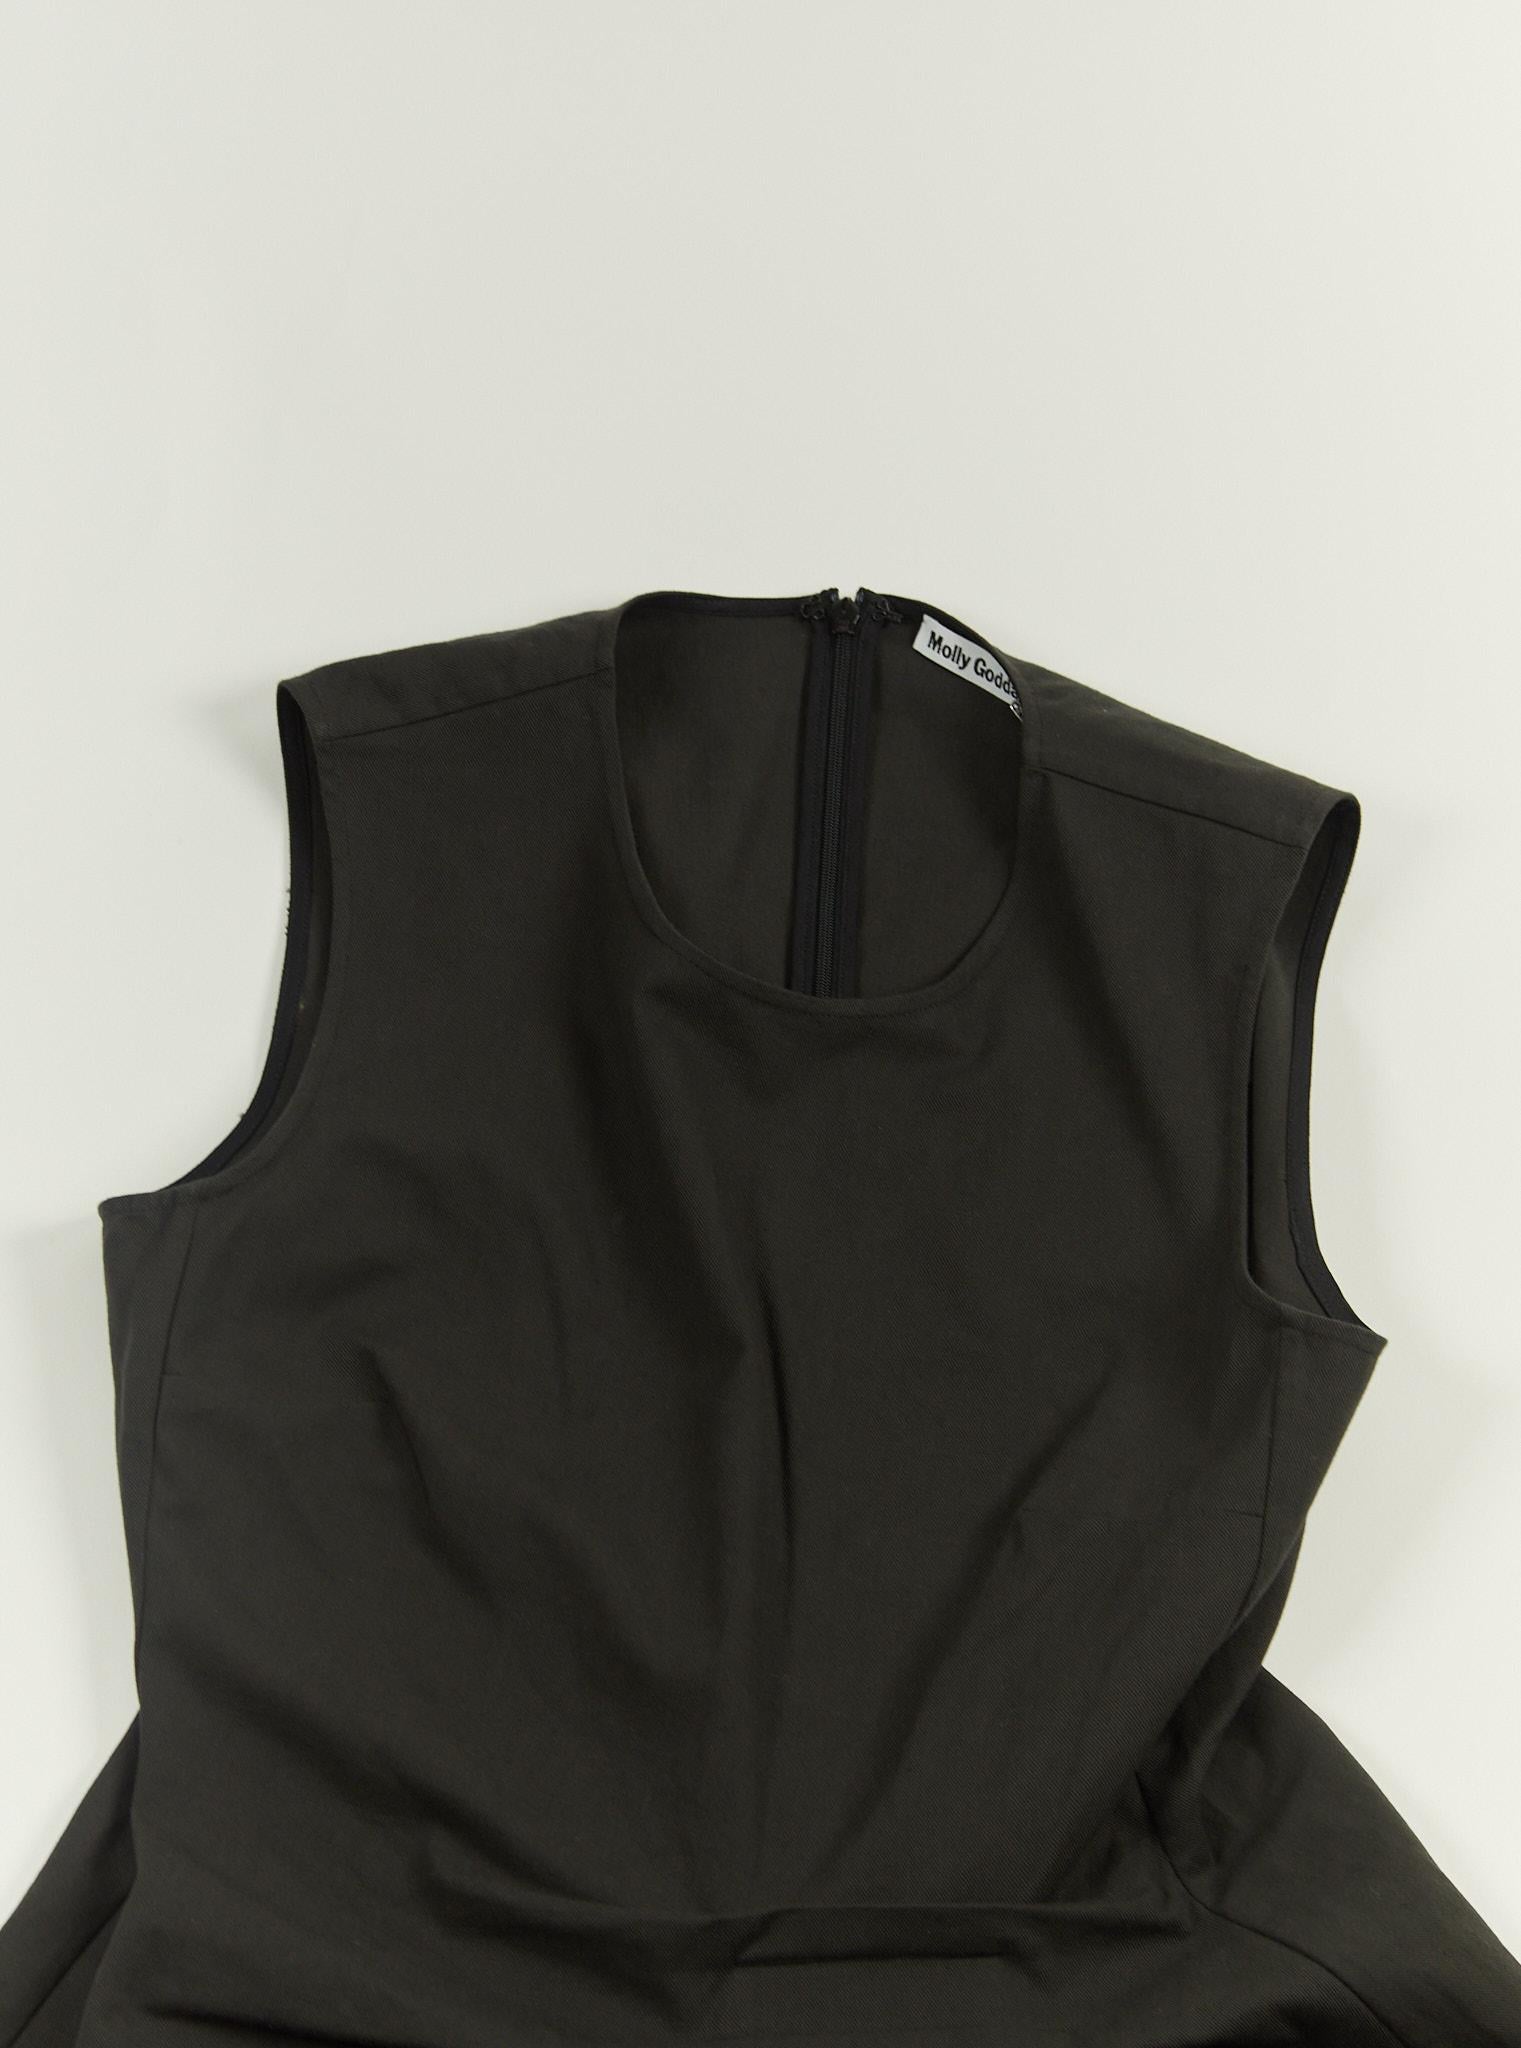 Molly Goddard - Alma - Mini robe à volants en noir et blanc 

Taille froncée et bordures volantées 

Taille 12 (UK) 

100% coton 

New - Unworn with Tags
